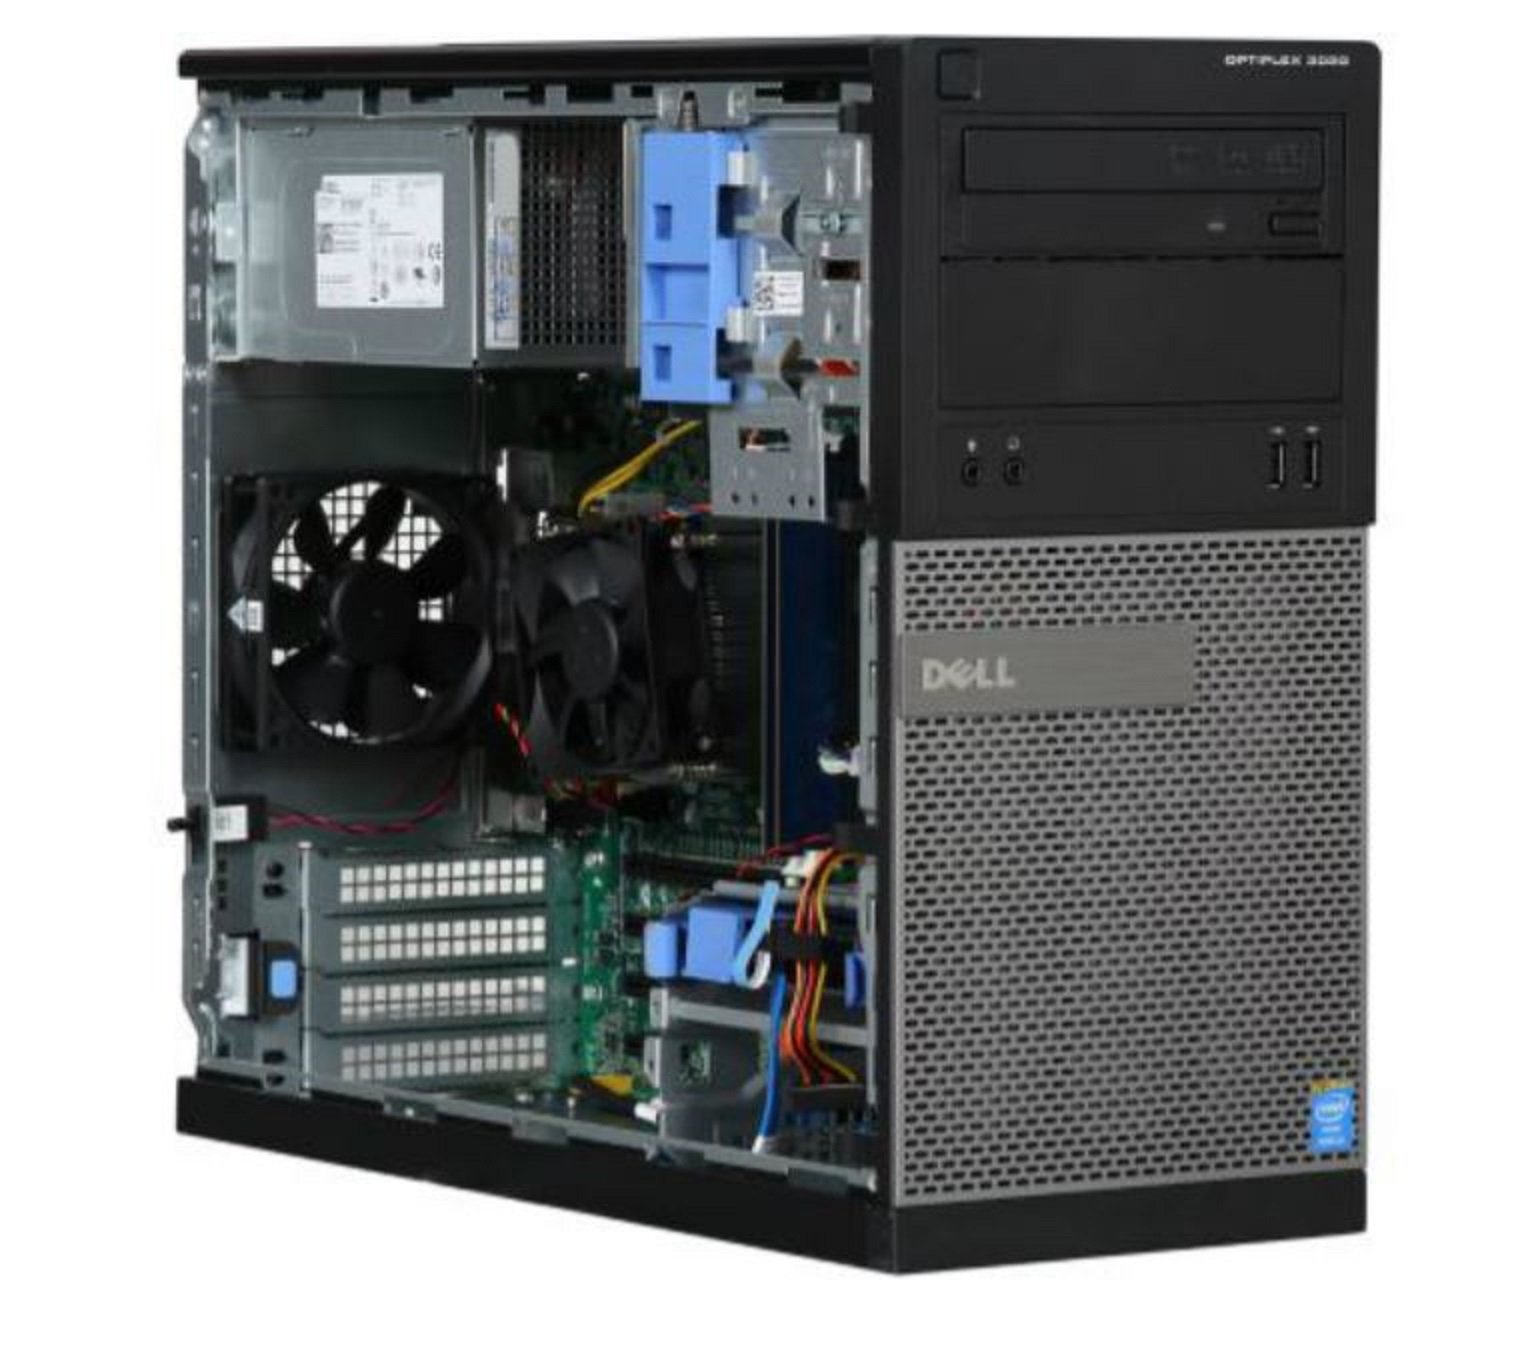 Dell OptiPlex 3020 MT Desktop PC - Intel Core i5 3.2GHz Quad Core - 4GB RAM - 500GB 7200RPM HDD - DVD Writer - Win 7 Pro (Pre-installed ) - No Monitor